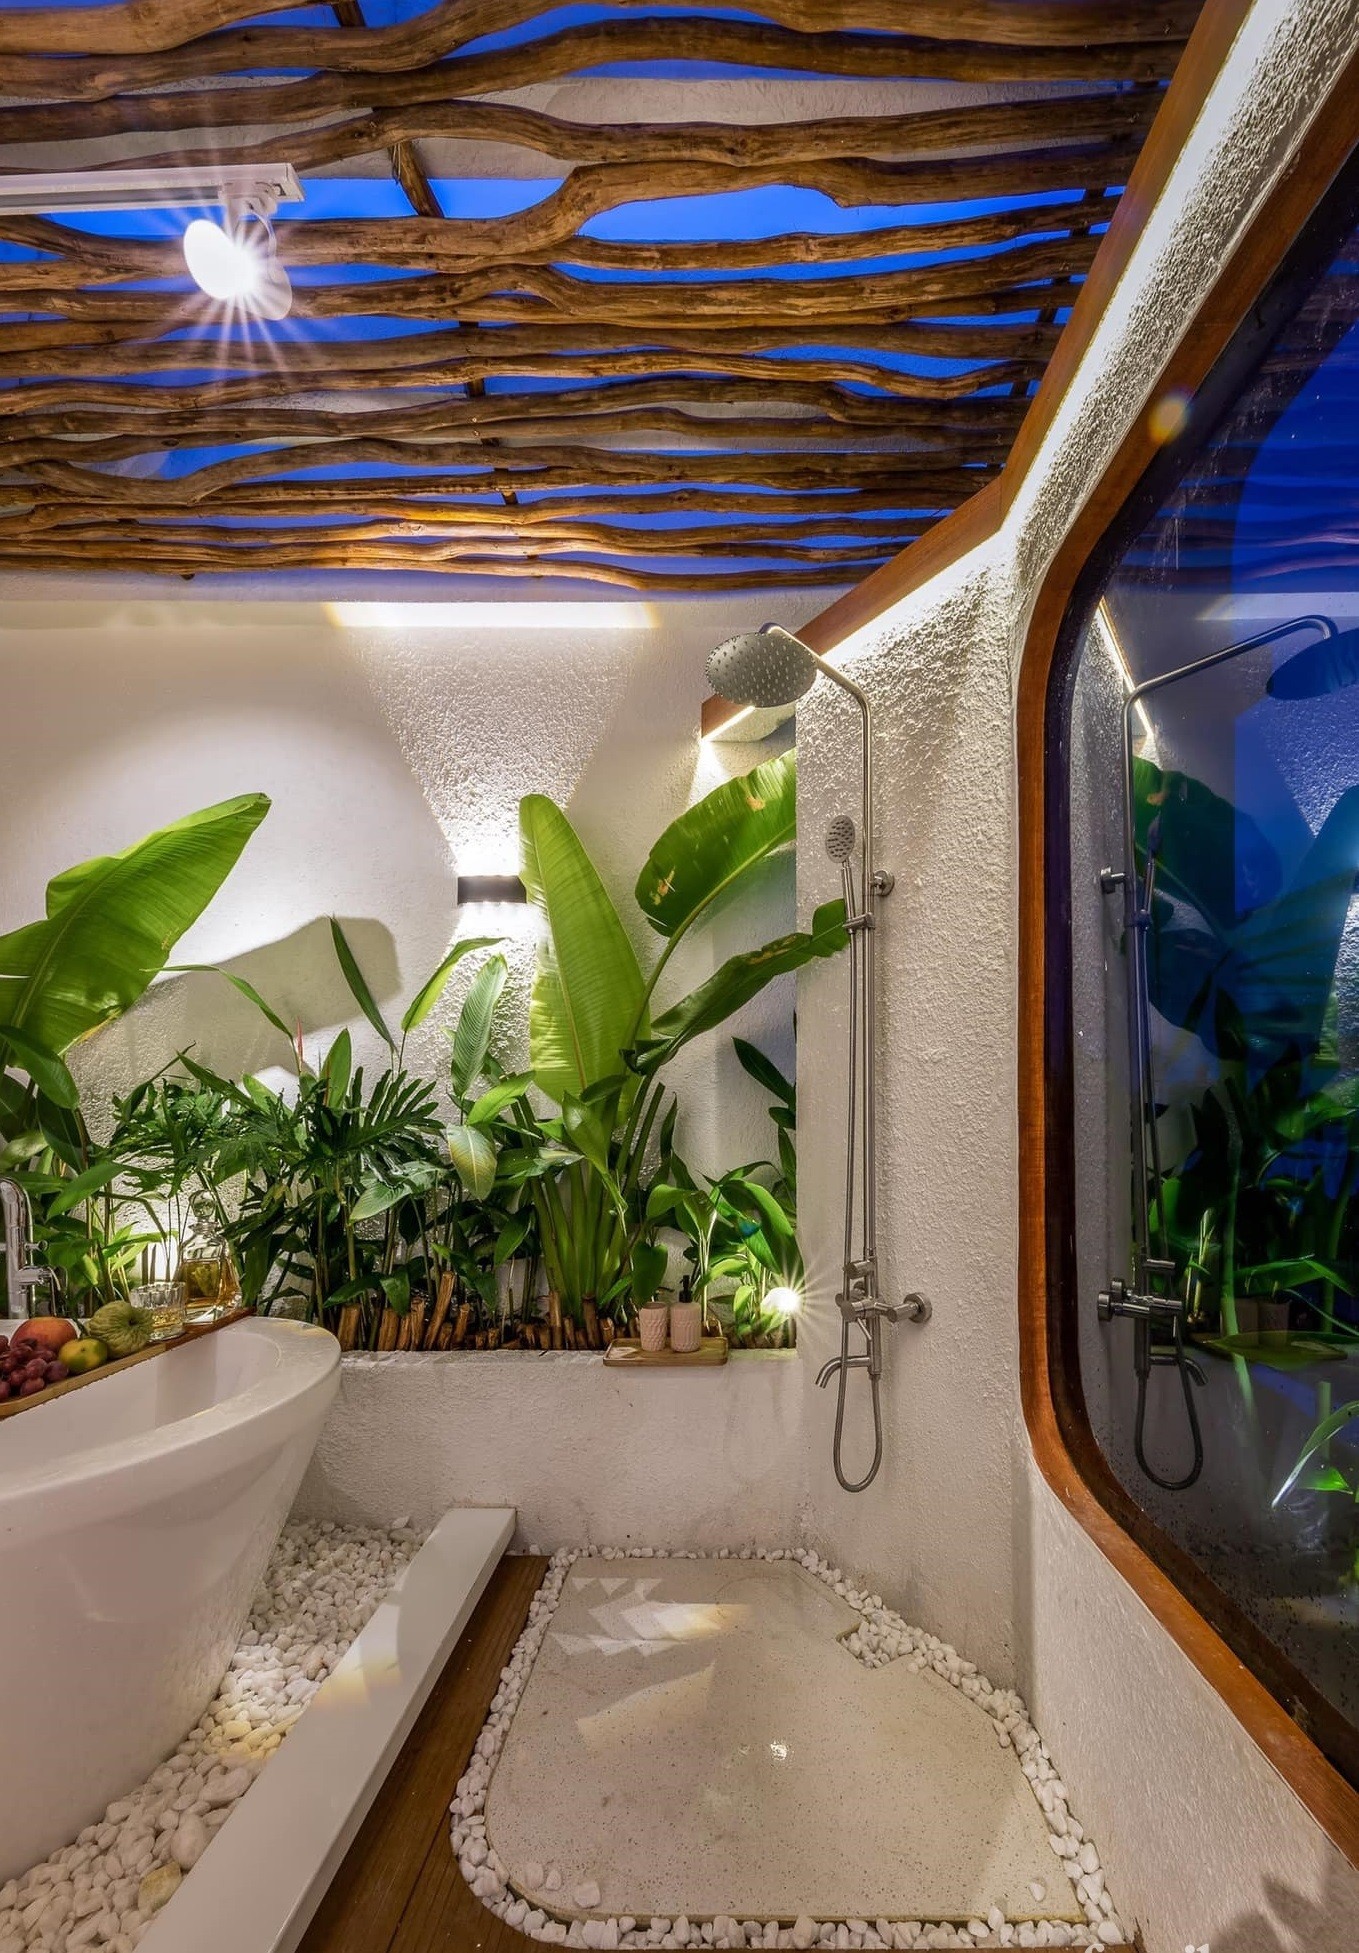 
Phòng tắm được làm từ những vật liệu gần gũi với thiên nhiên, giống như một resort ở giữa thành phố
